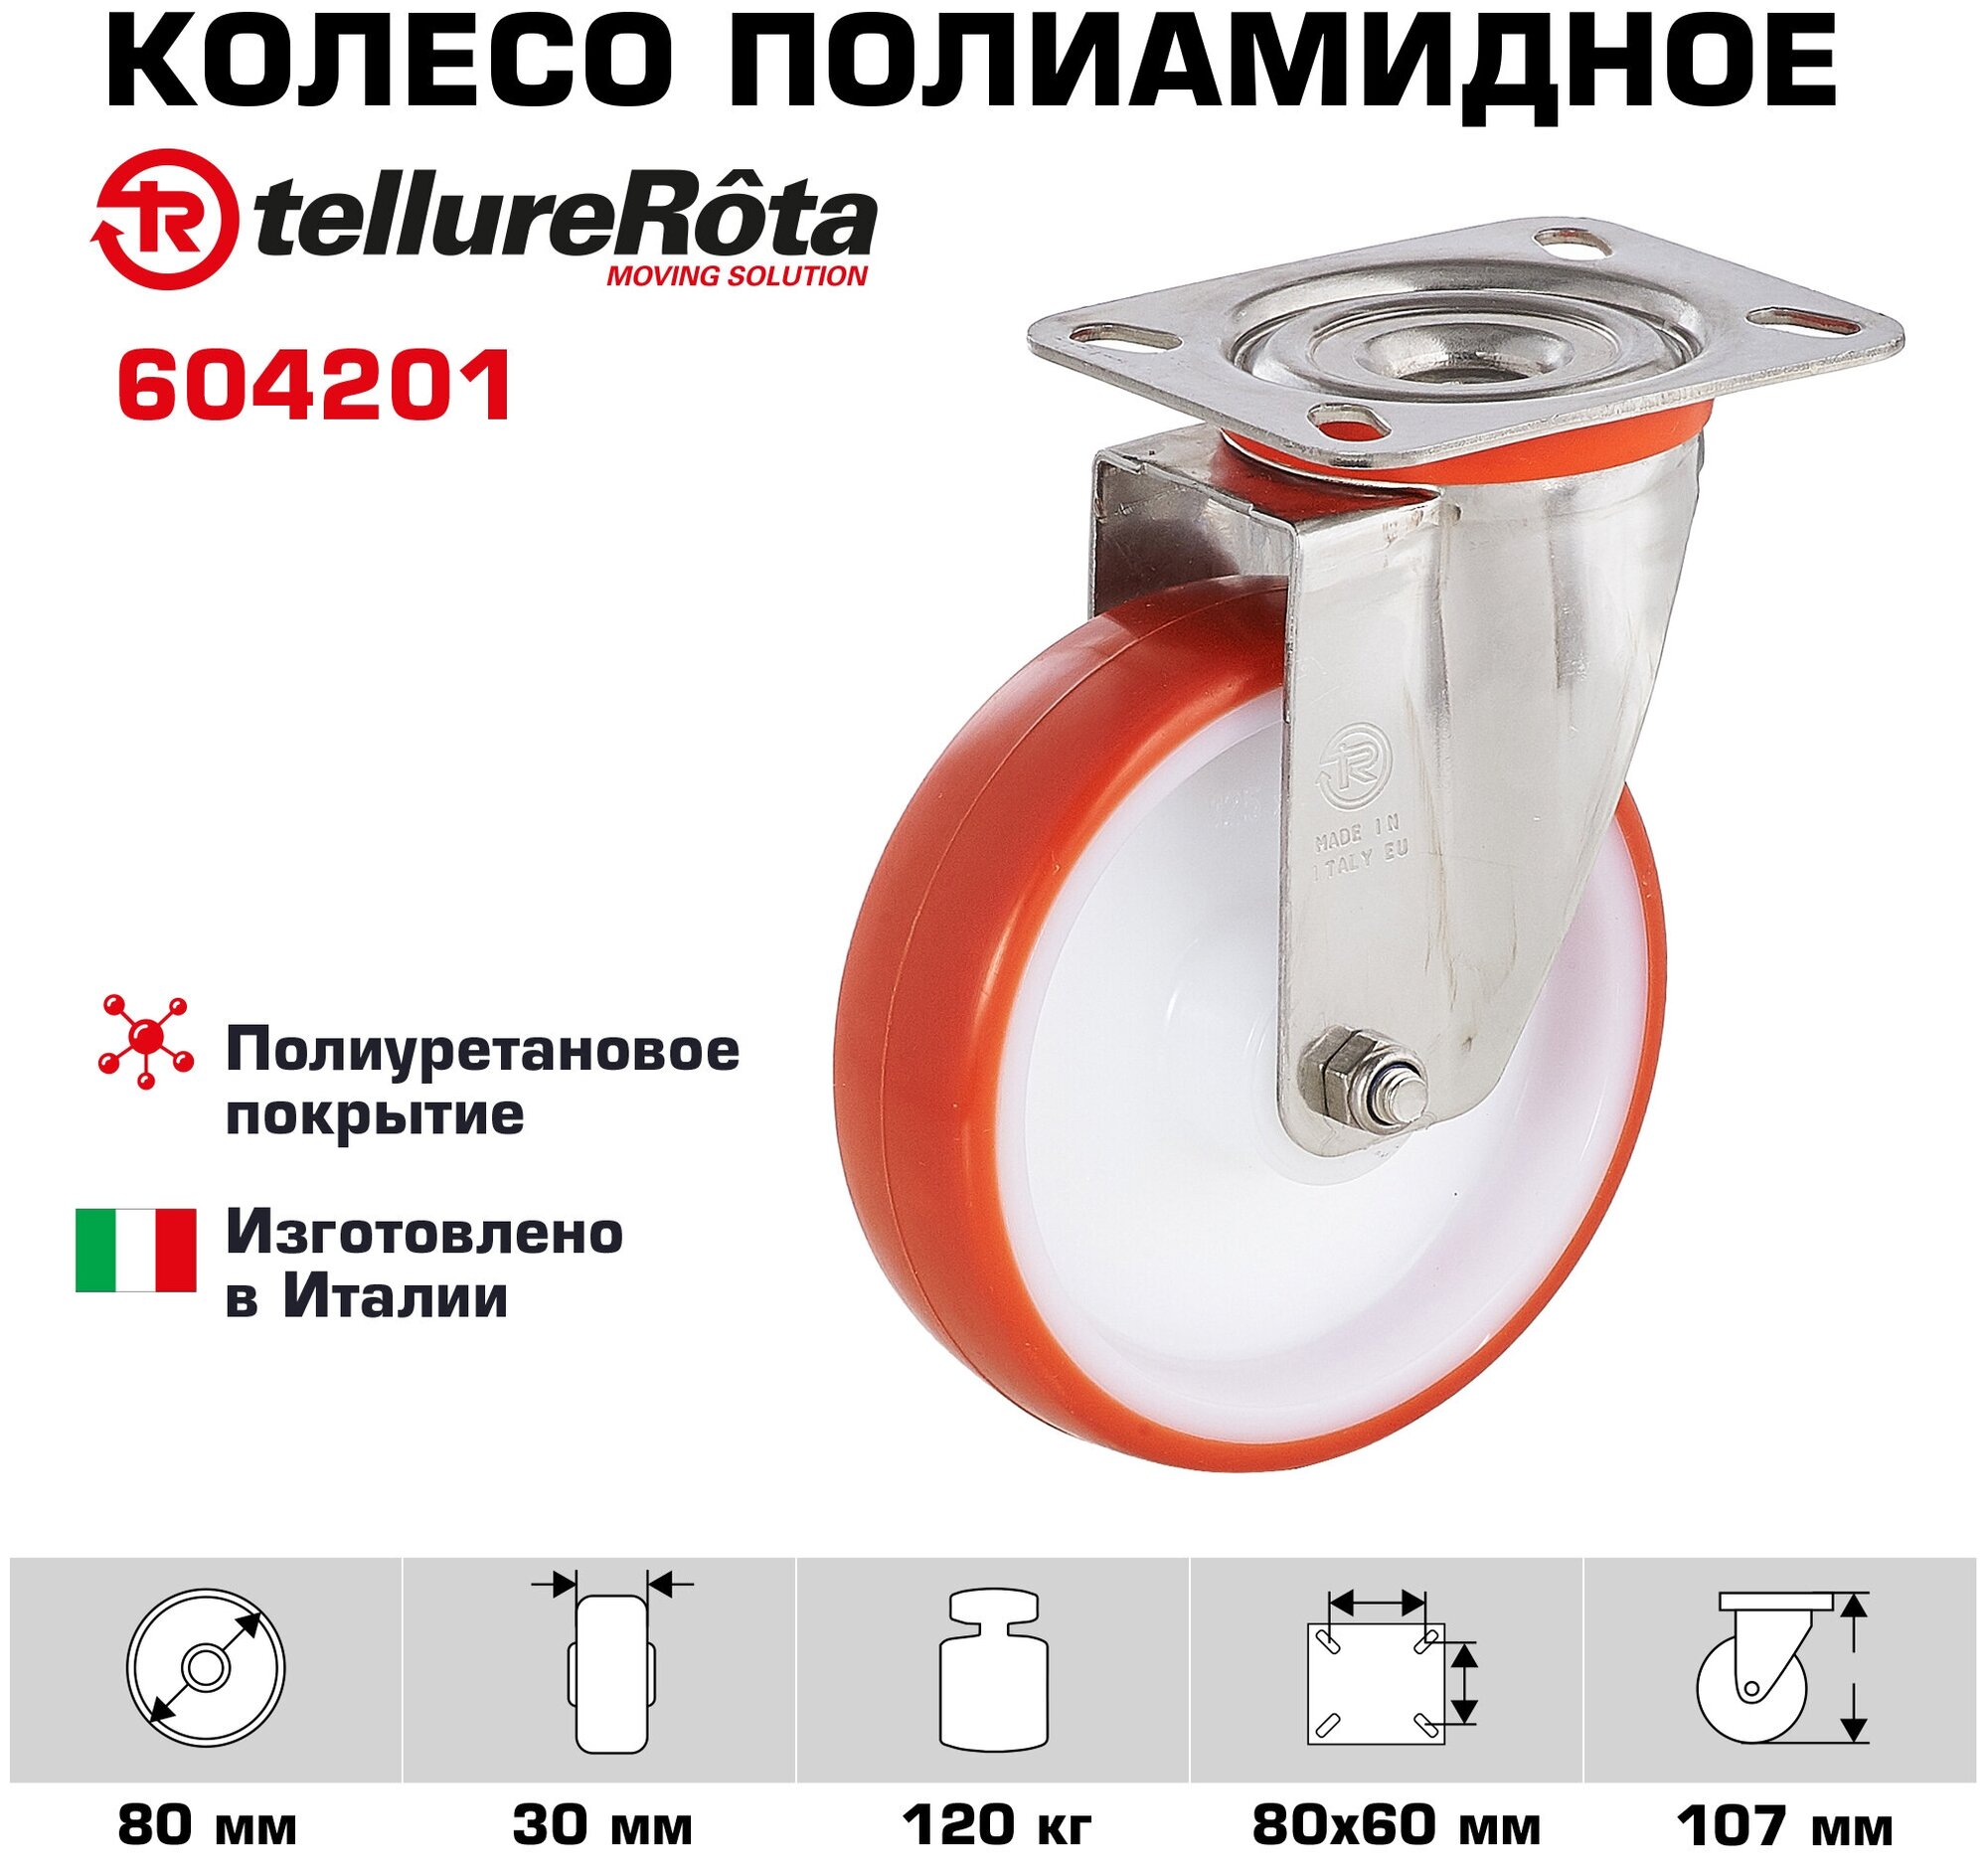 Колесо Tellure Rota 604201 поворотное, диаметр 80мм, грузоподъемность 120кг, термопластичный полиуретан, полиамид